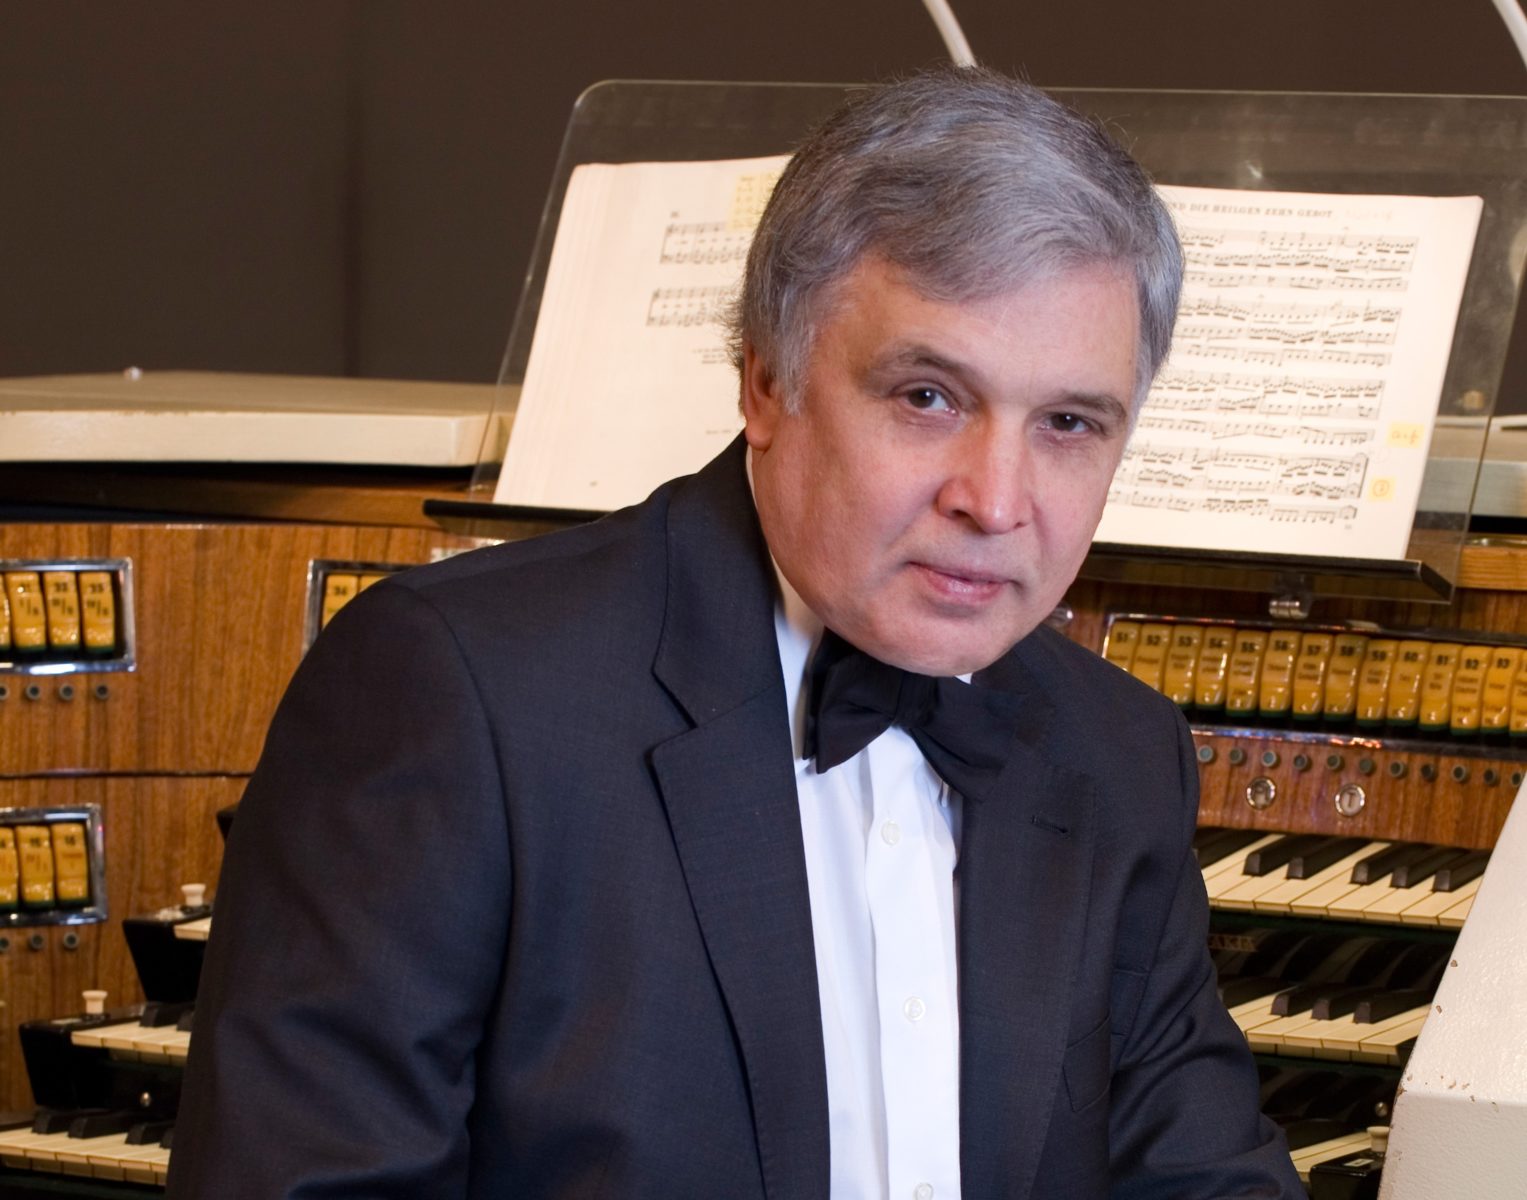 Концерт «И. С. Бах. Музыка для органа и виолончели» – события на сайте «Московские Сезоны»